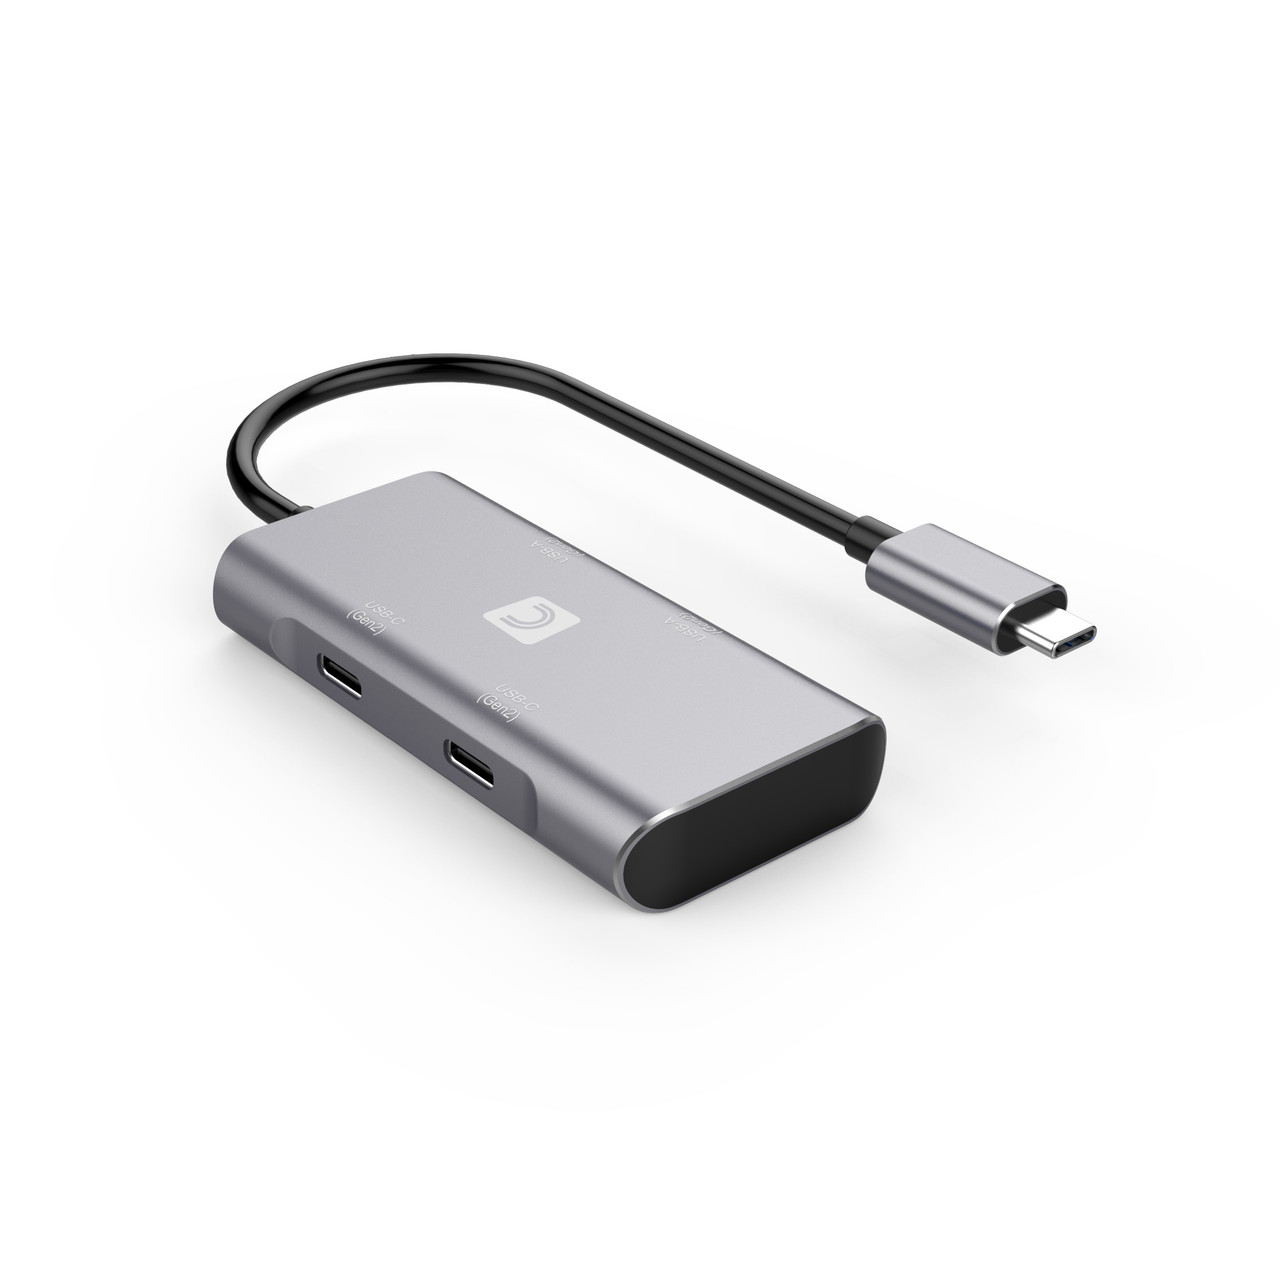  Aceele 𝟏𝟎𝐆𝐛𝐩𝐬 USB C Hub with 4 USB A 3.2 Ports